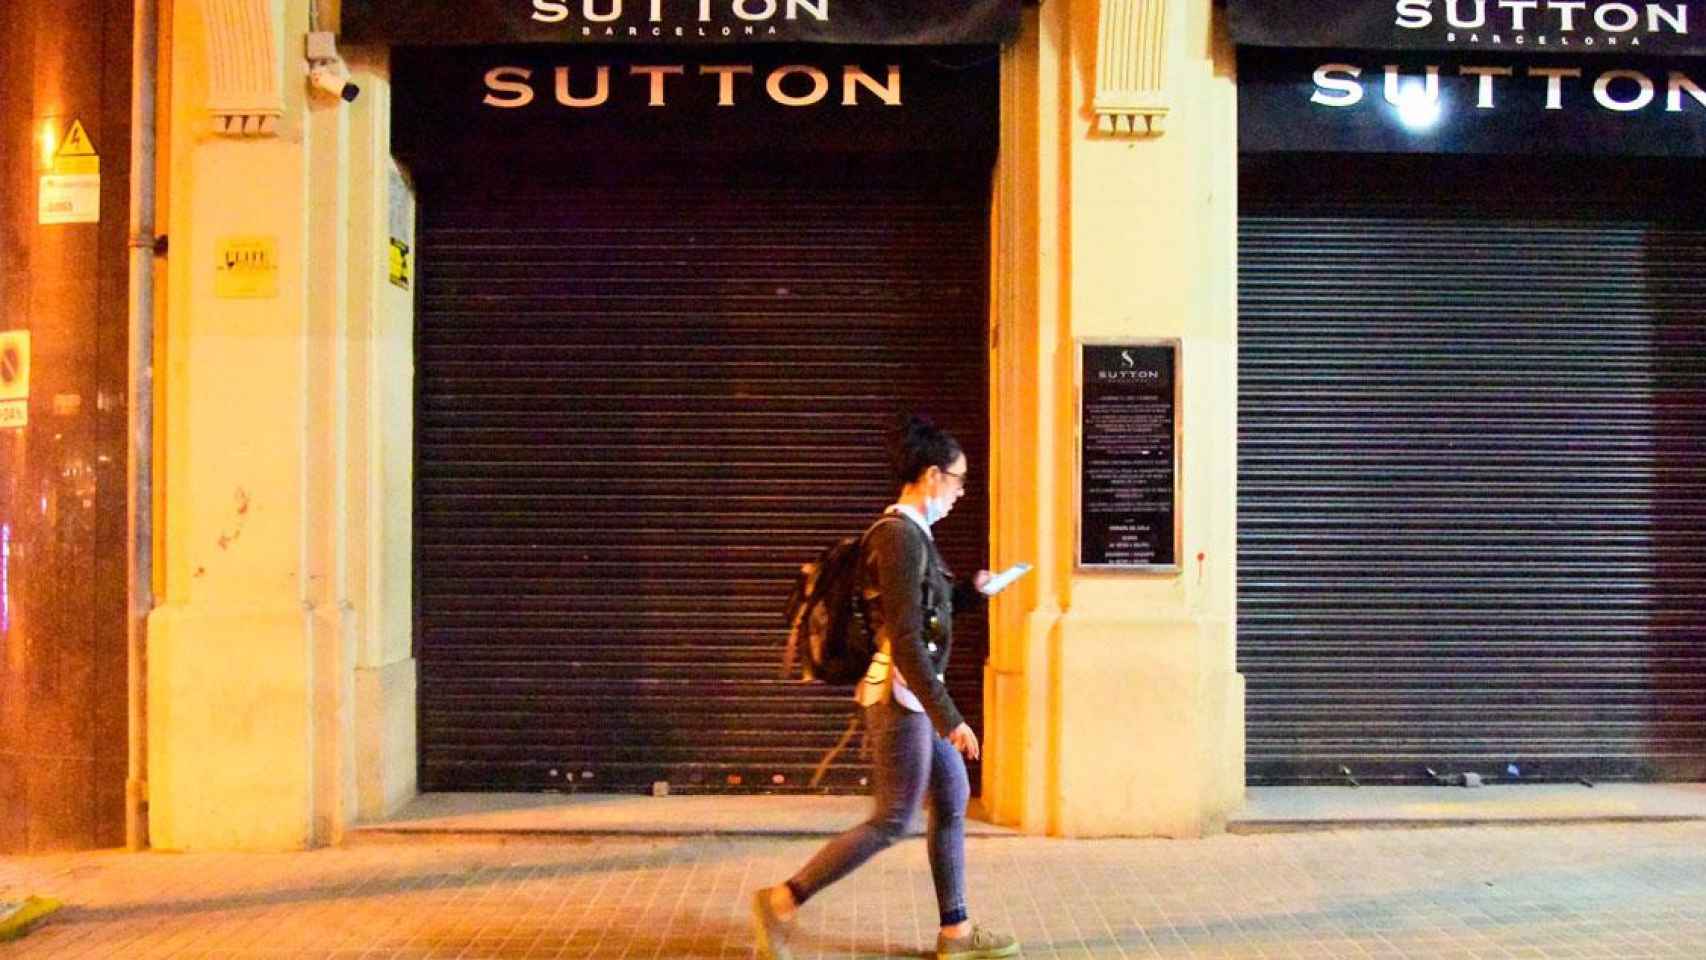 Una ciudadana pasa ante Sutton, discoteca de la zona alta de Barcelona / EP